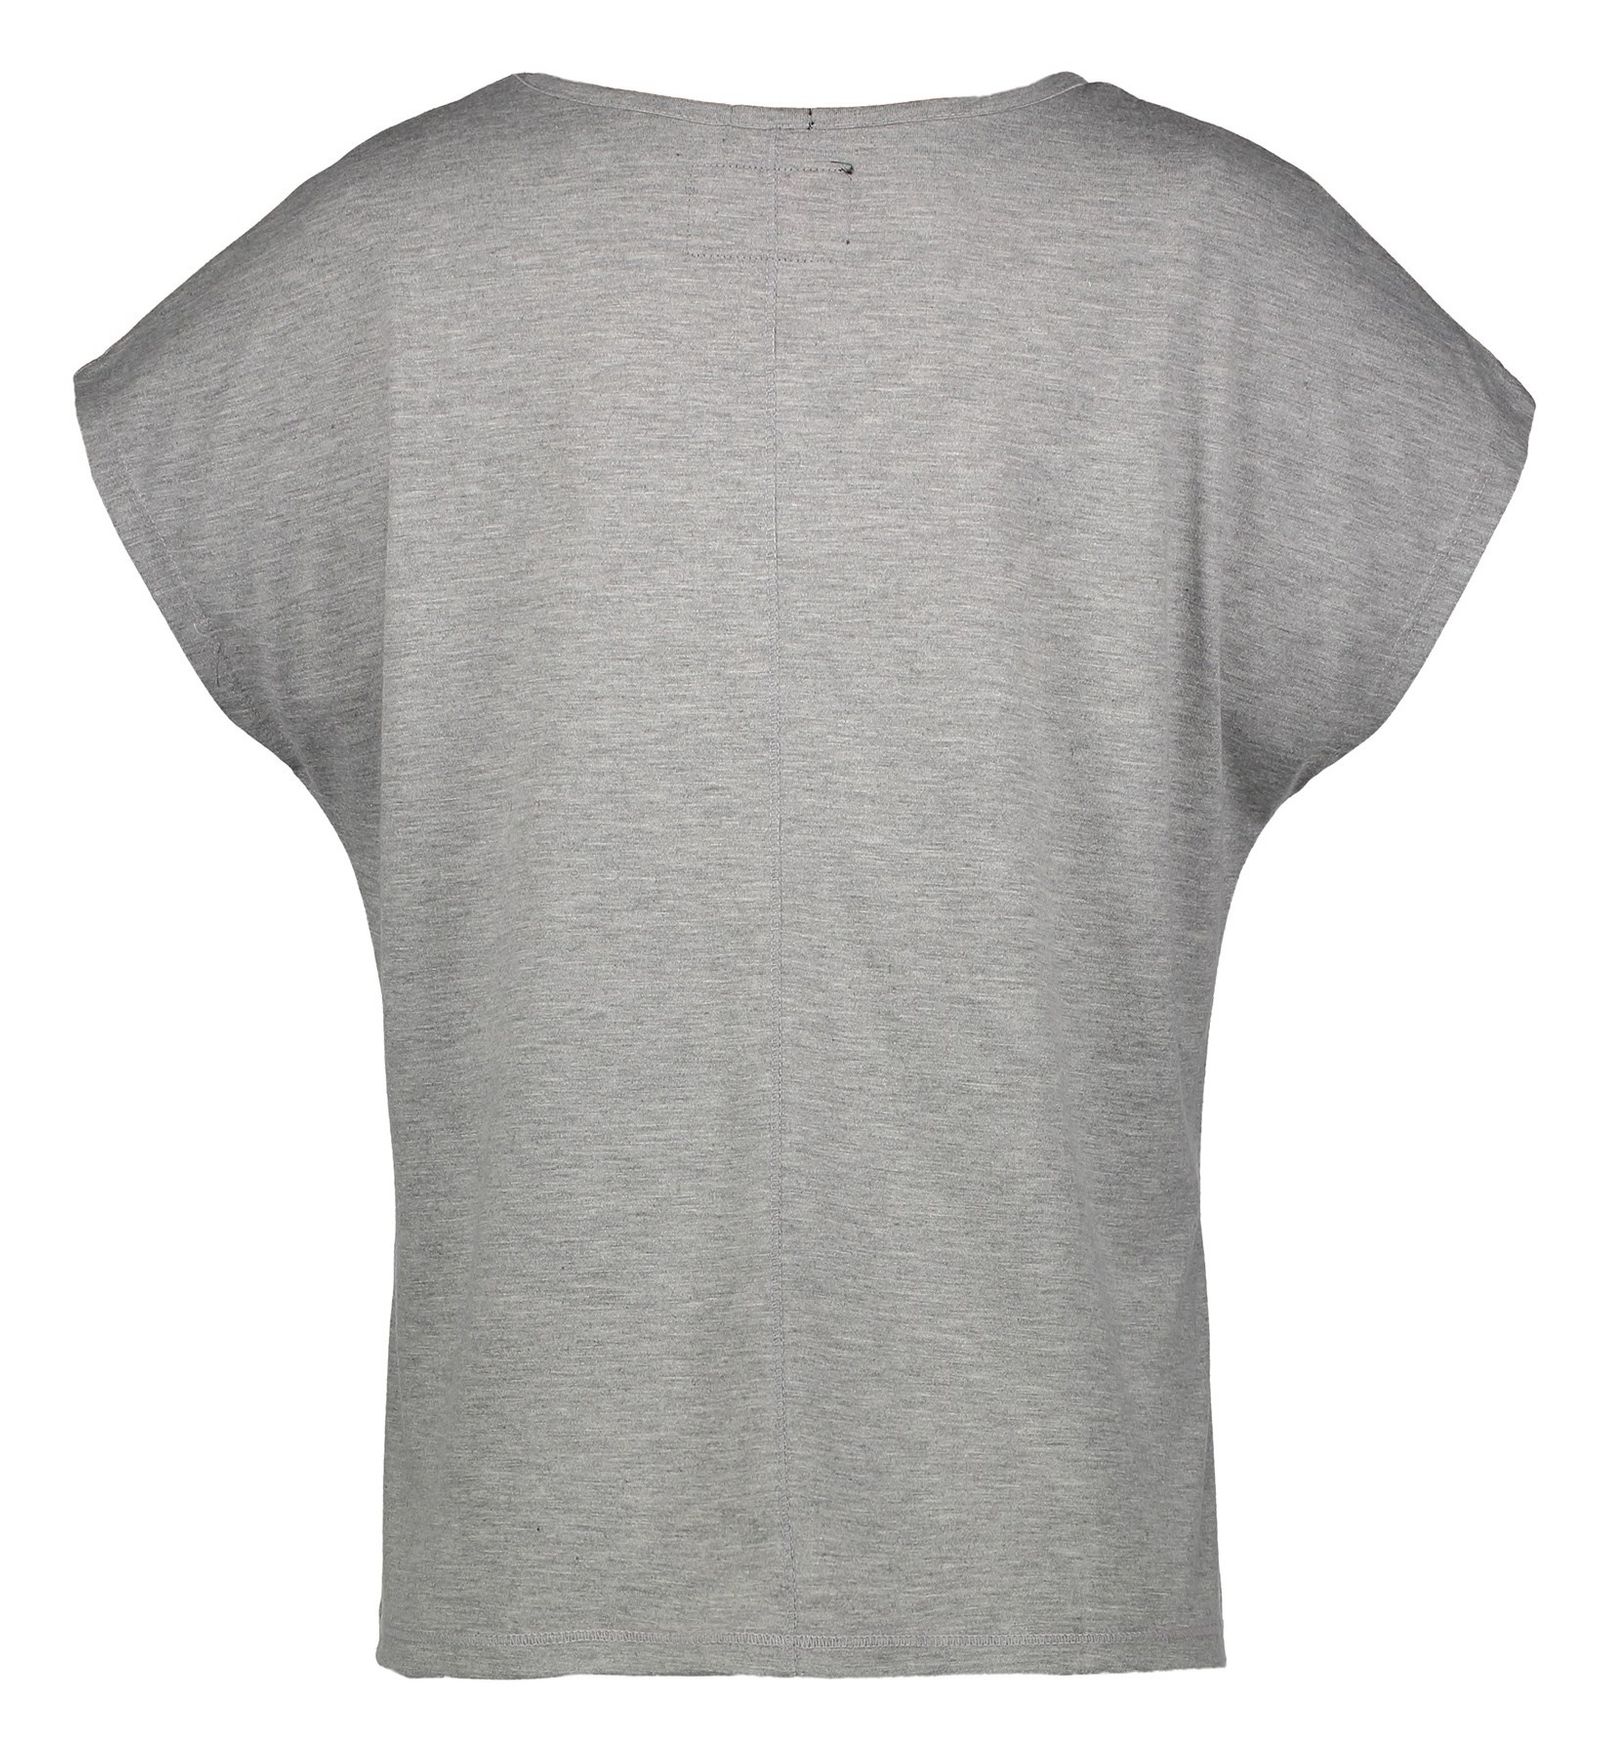 تی شرت یقه گرد زنانه Boxy Text - سوپردرای - طوسي روشن - 3